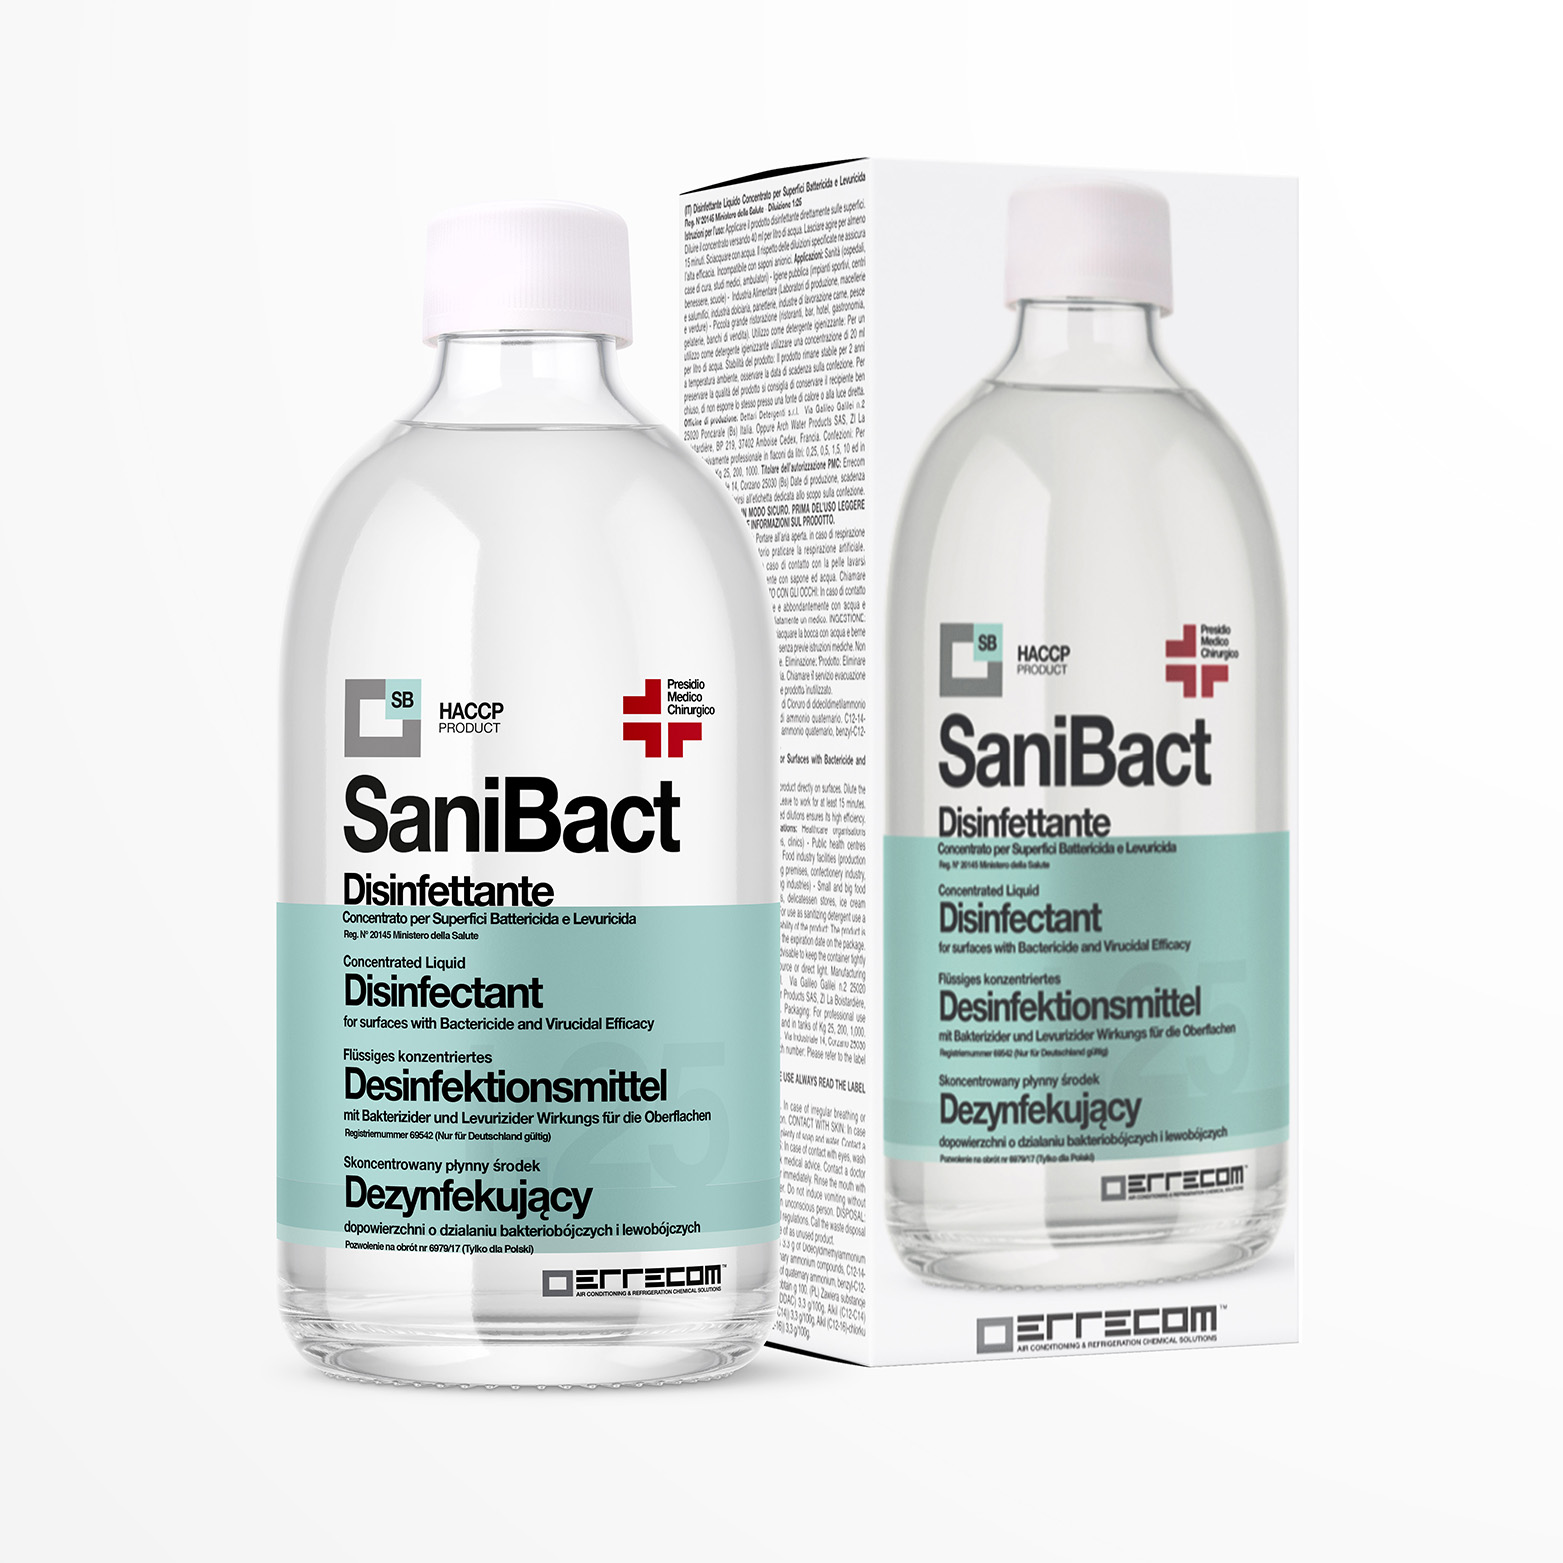 12 x SANIBACT Disinfettante liquido per Superfici, Battericida, Levuricida e Virucida (Presidio Medico Chirurgico) - Flacone 500 ml - Confezione n° 12 pz.